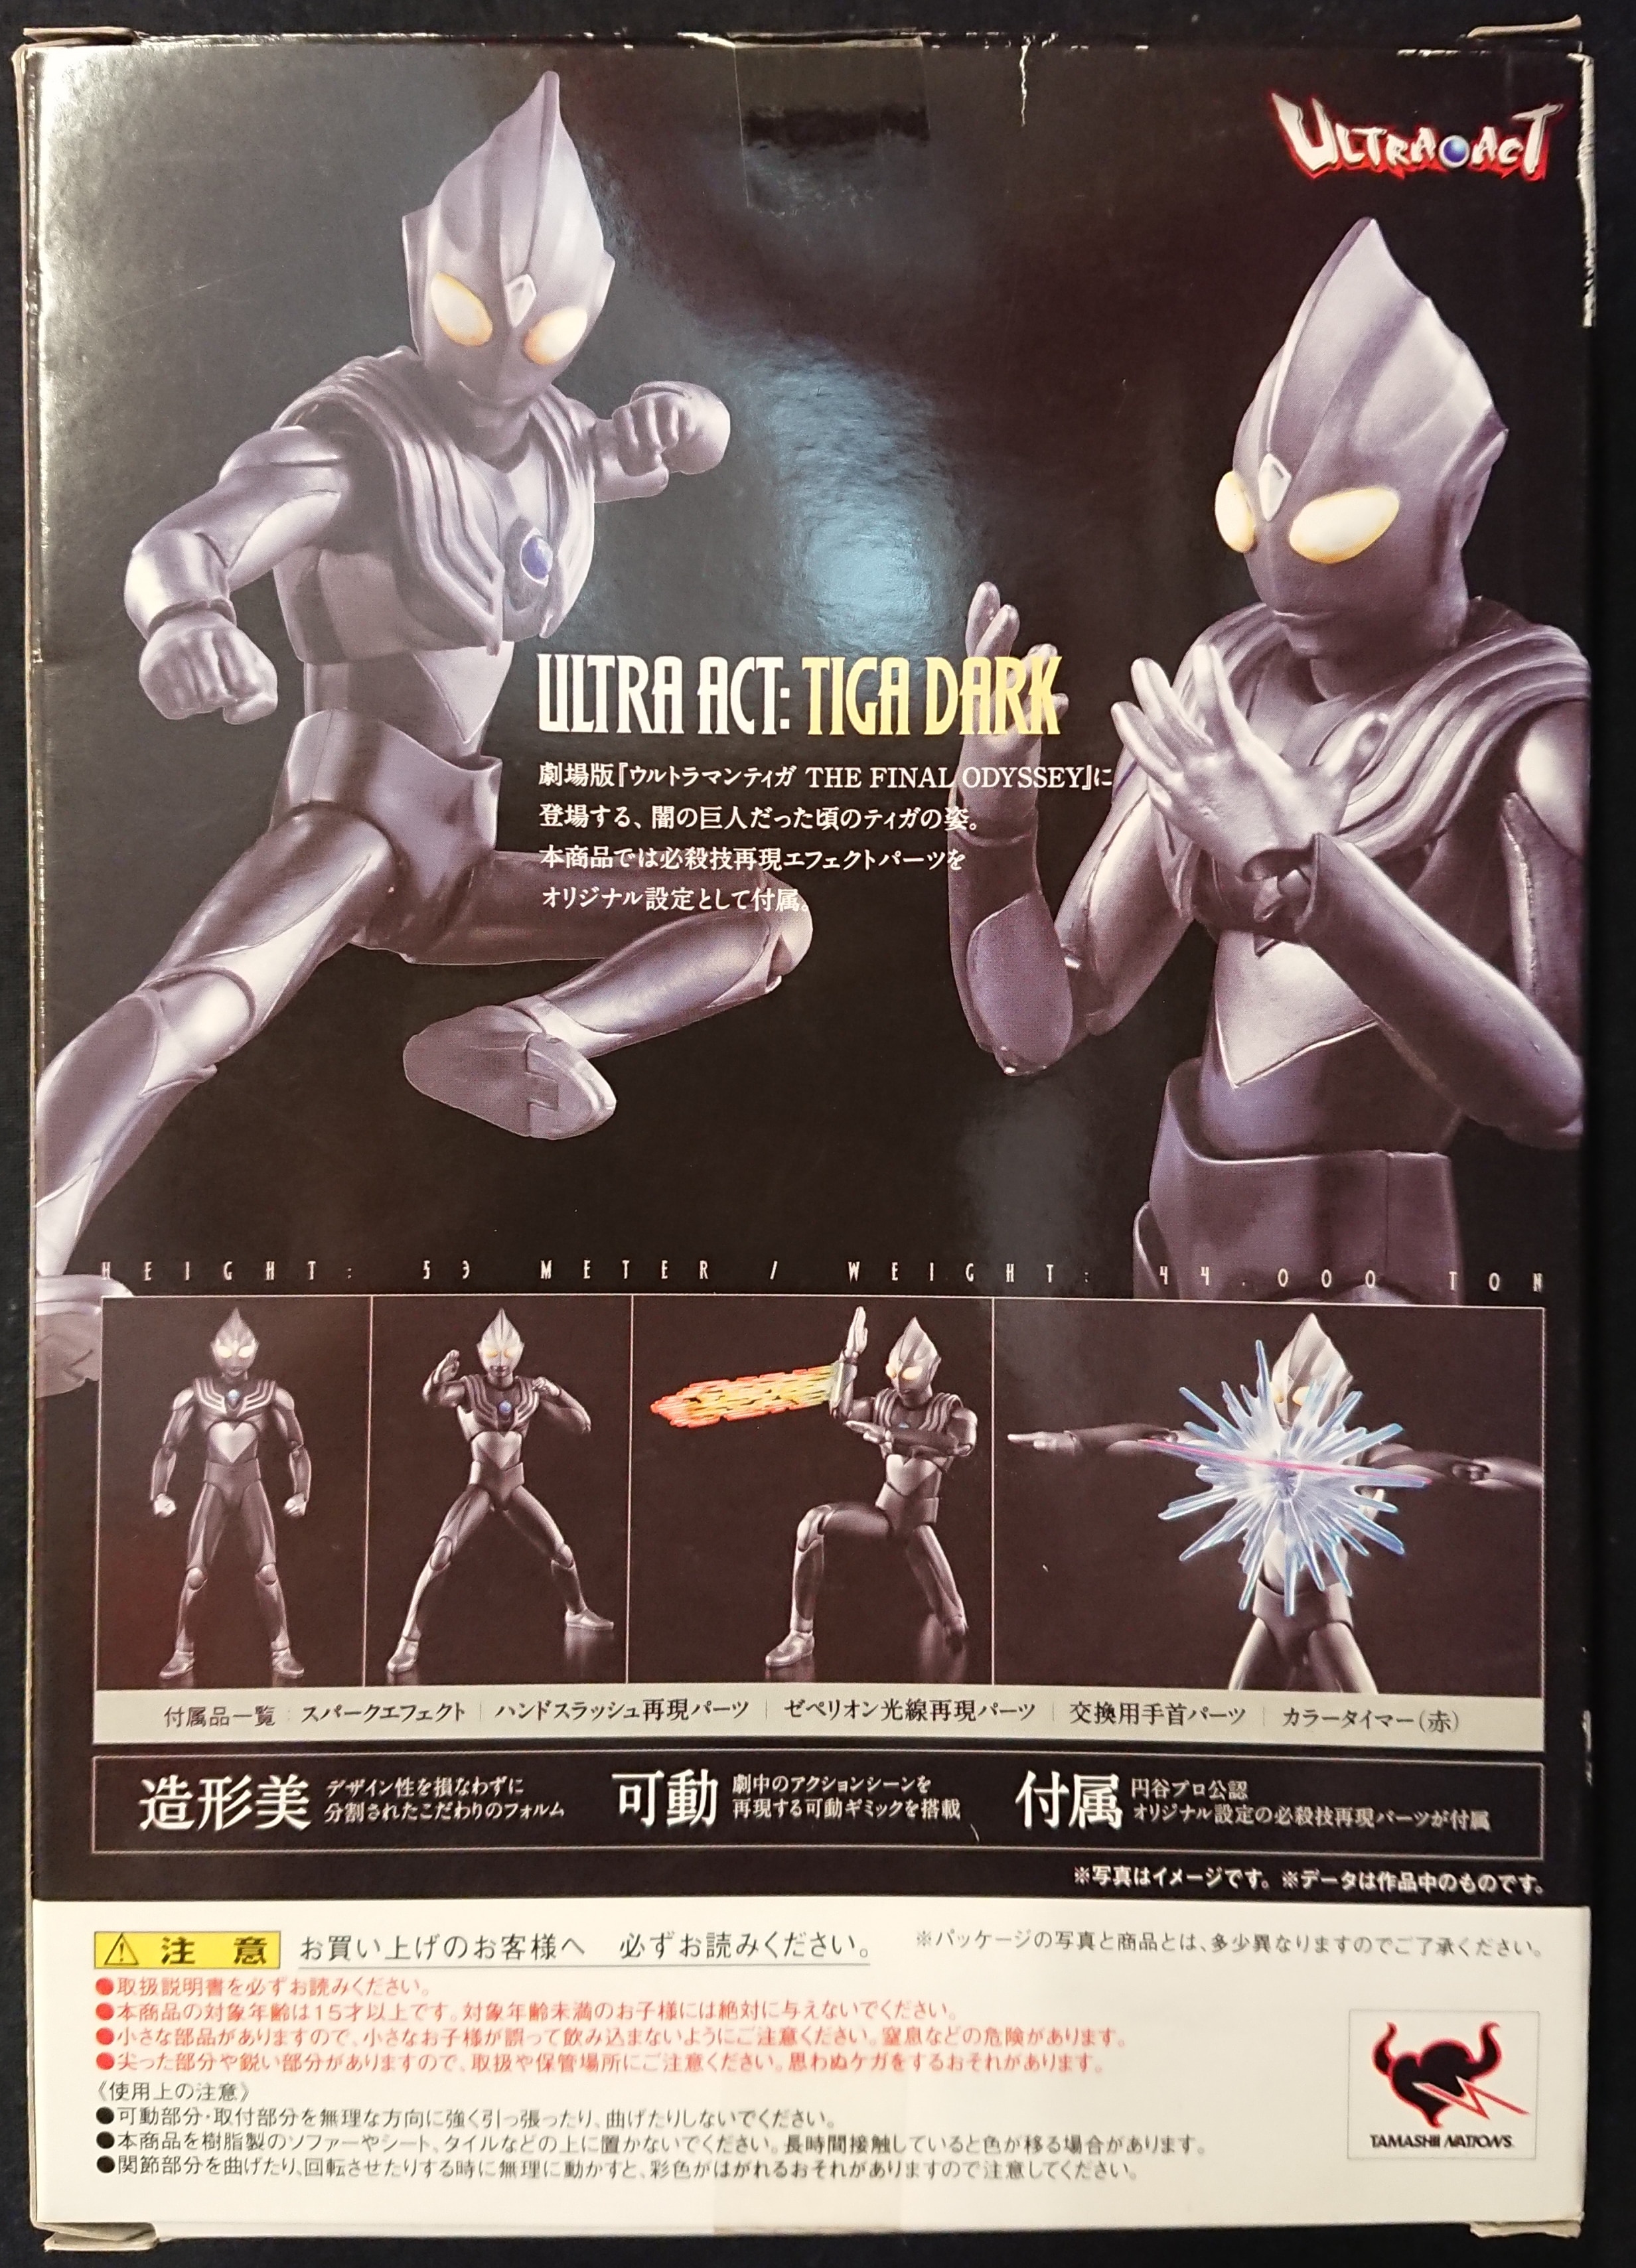 バンダイ ウルトラアクト ウルトラマンティガ ティガダーク Ultraman Tiga Dark Mandarake 在线商店